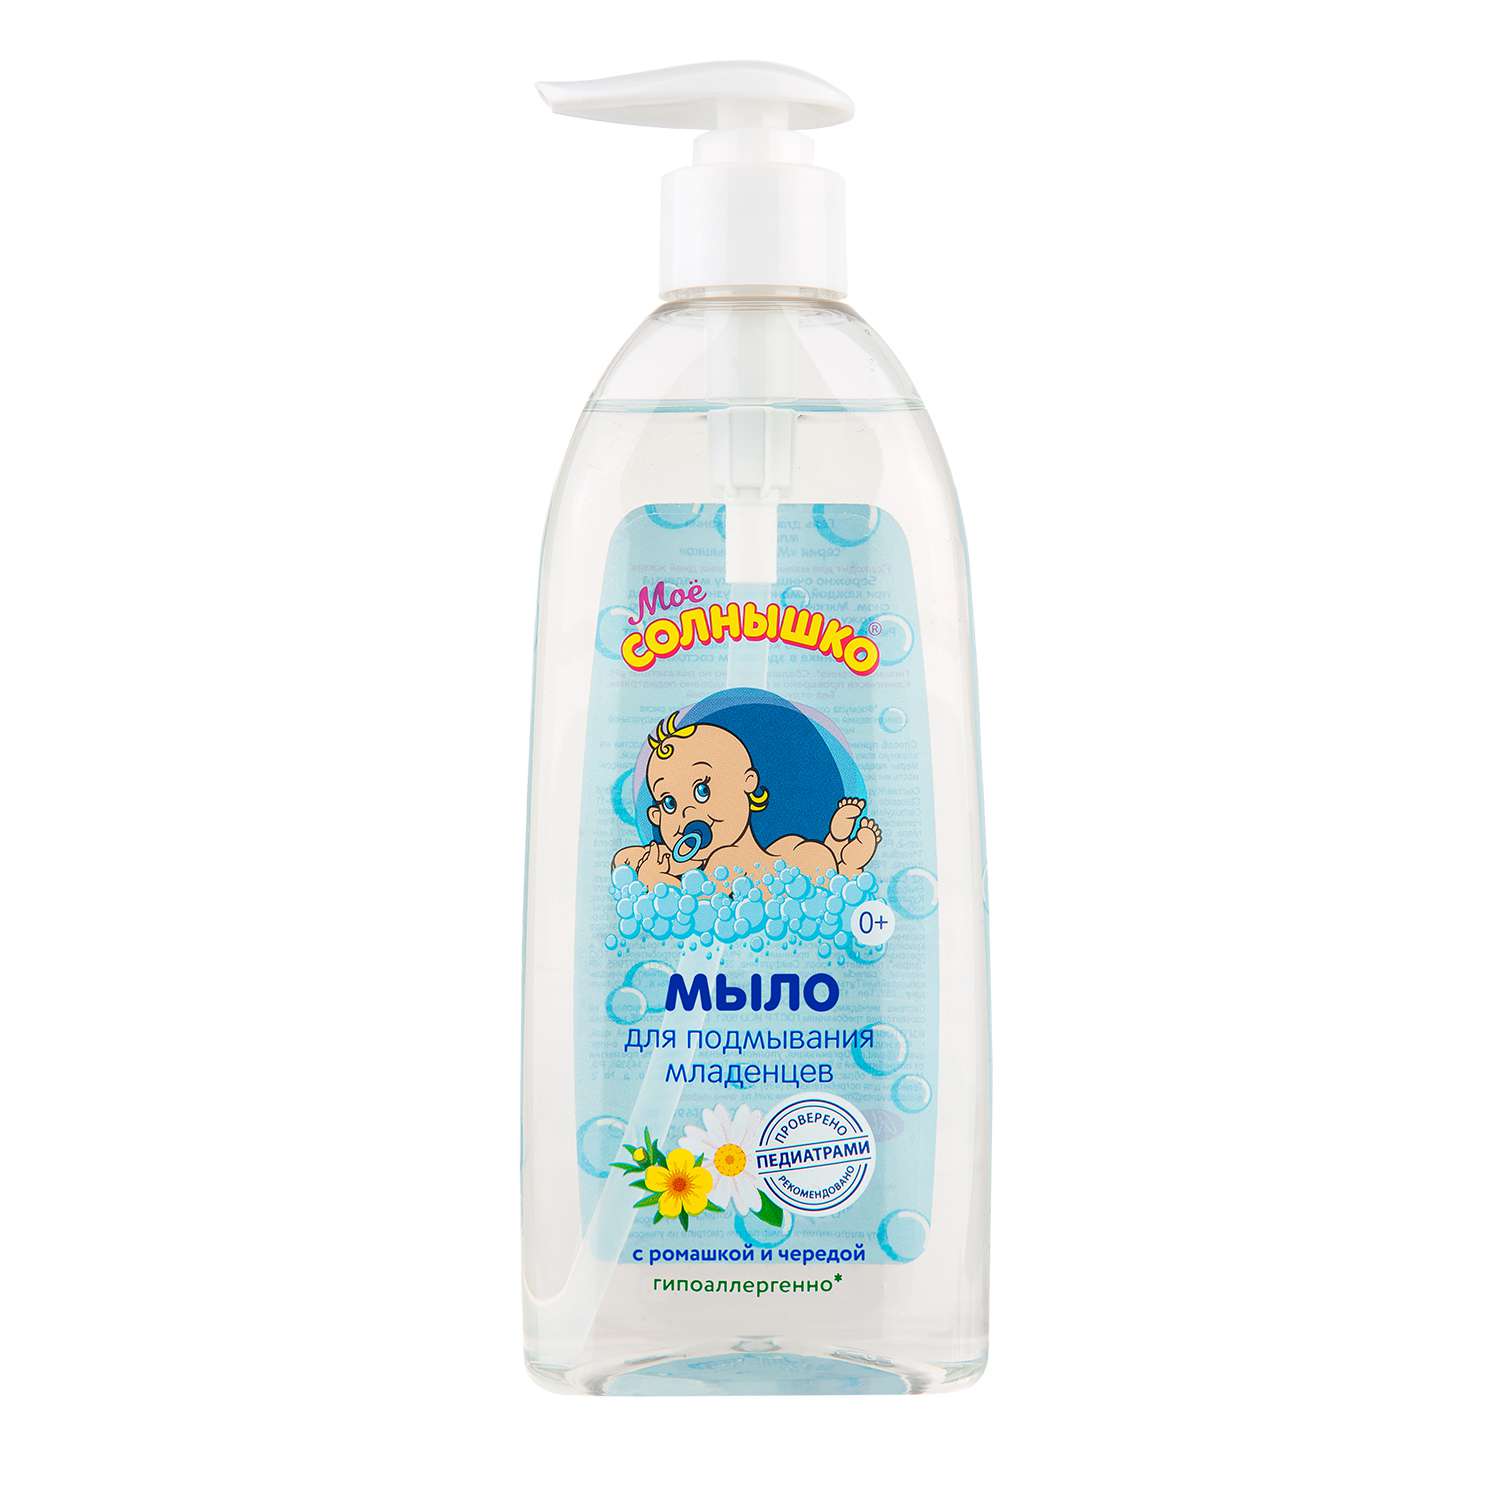 Жидкое мыло 400мл для подмывания младенцев Мое солнышко - Нижнекамск 